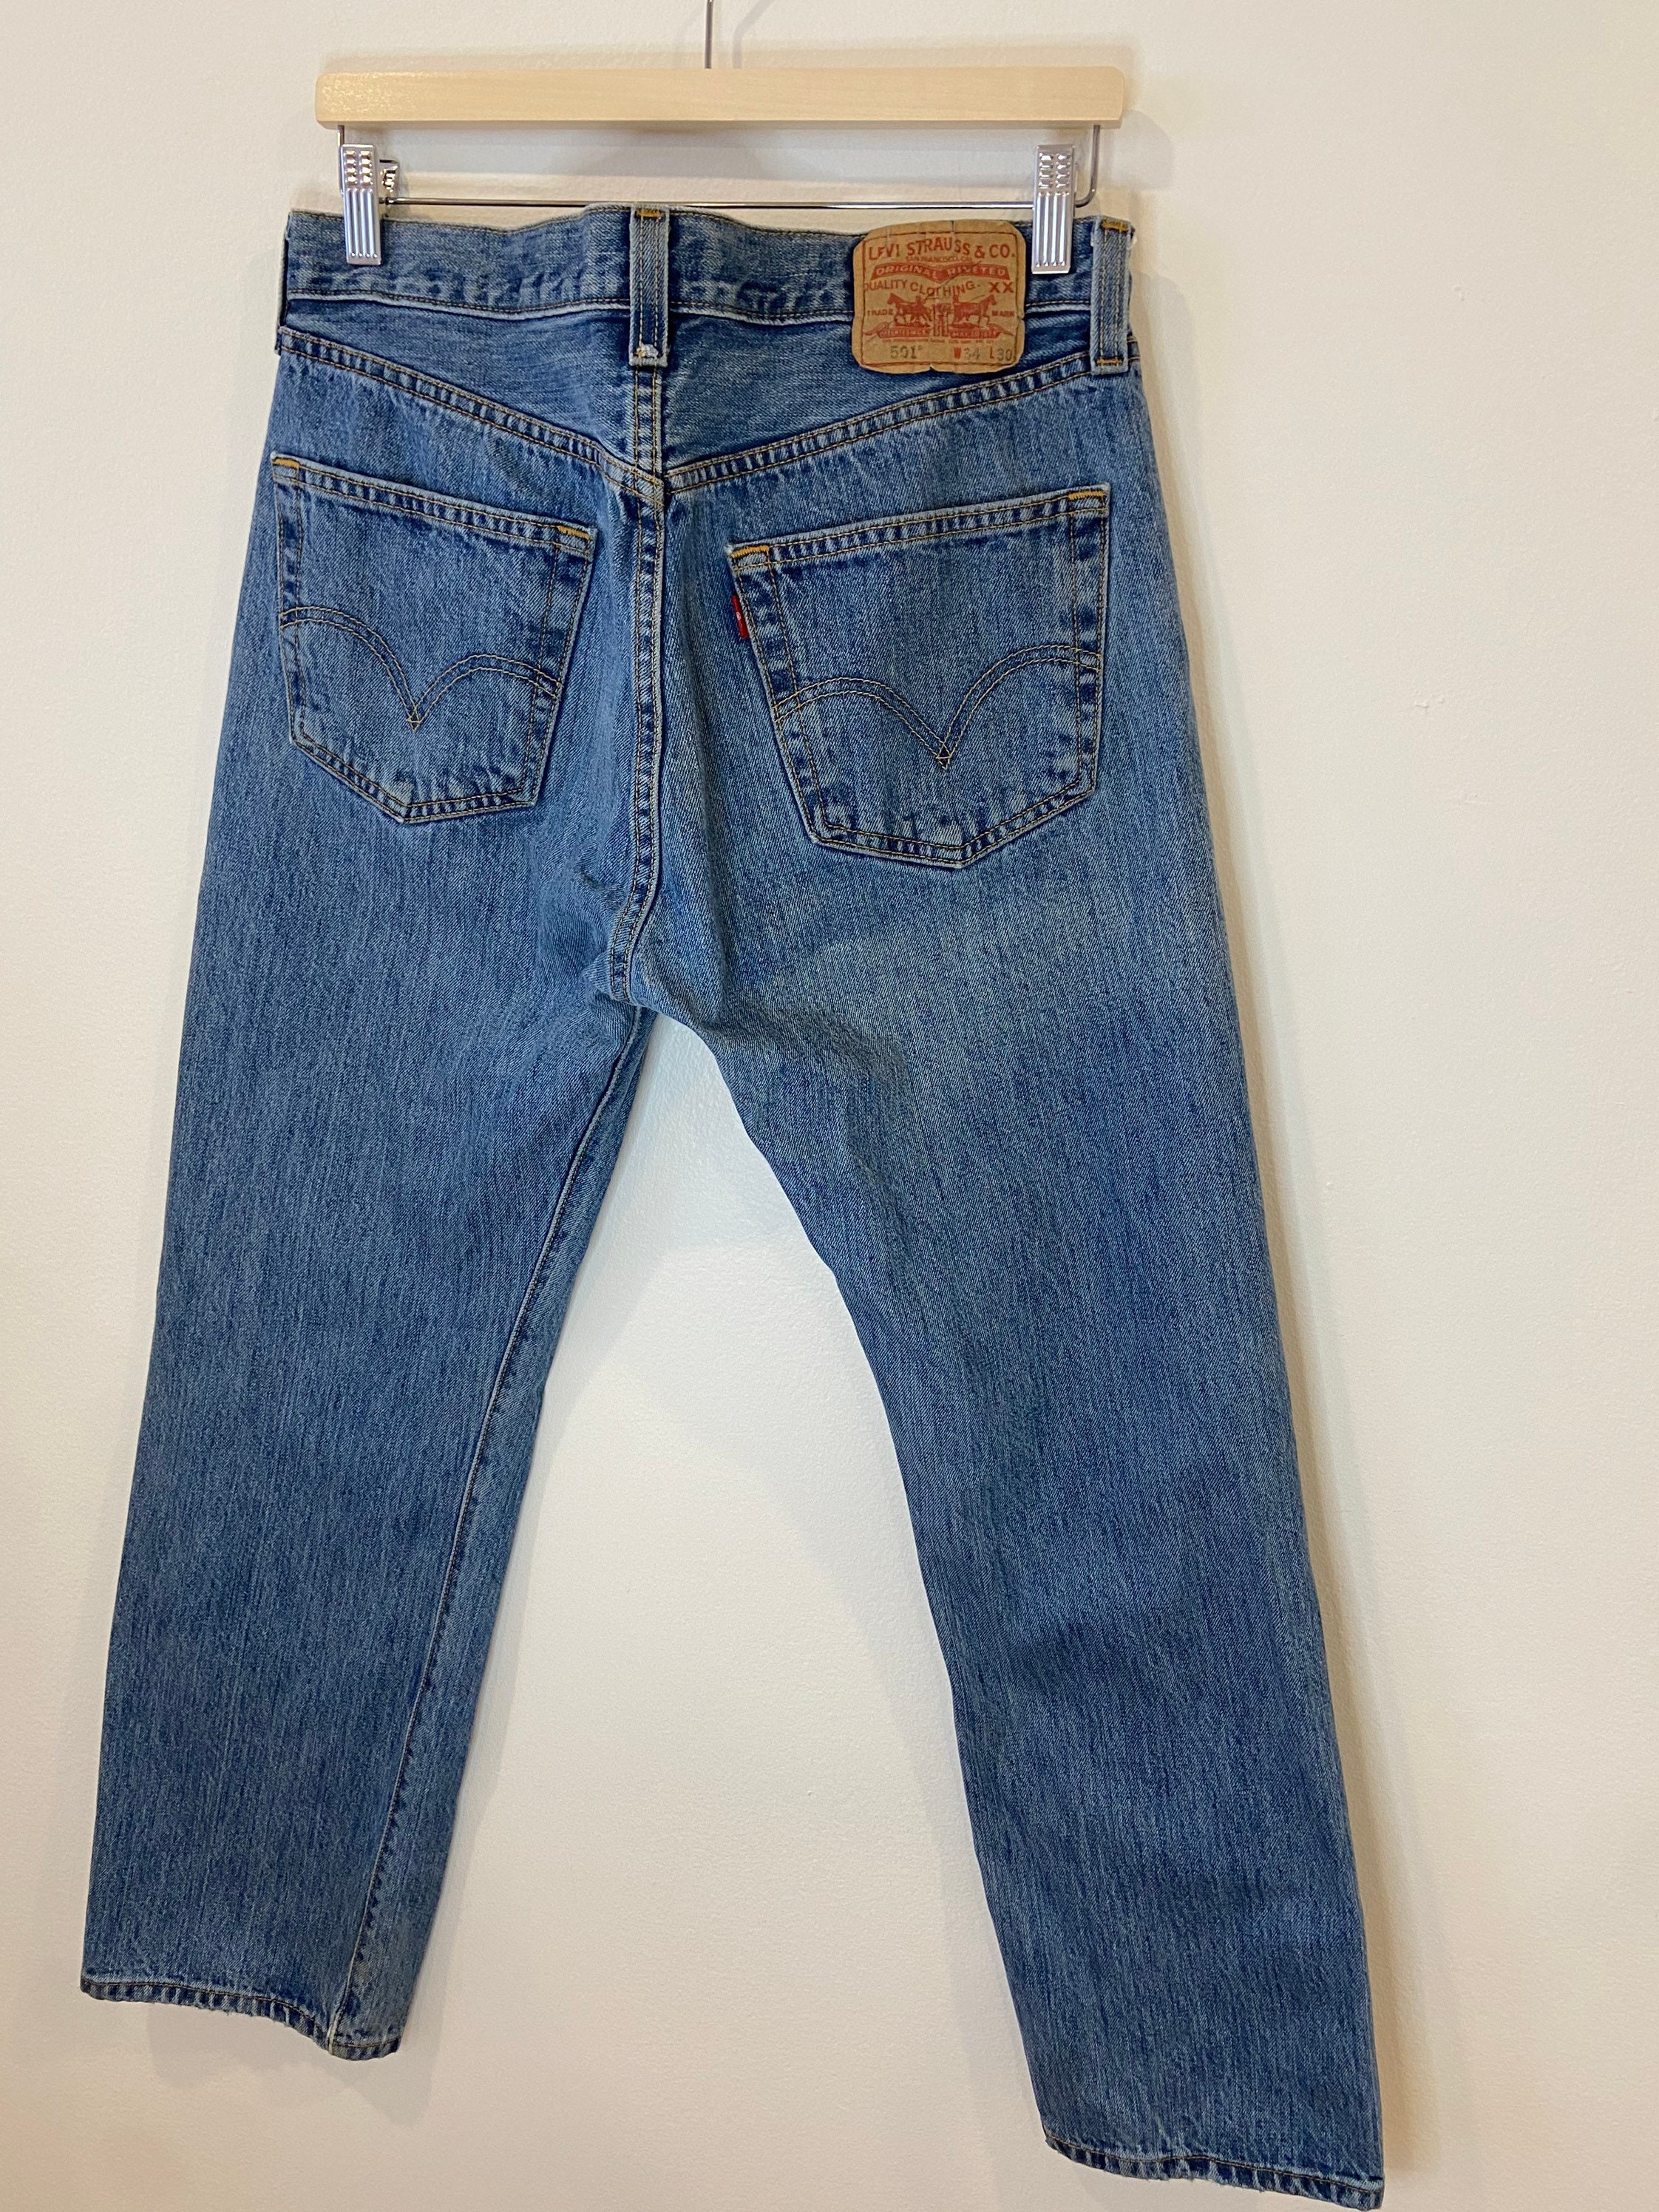 Vintage Levis 501xx Jeans Size W34 L30 Vintage Jeans Denim - Etsy Australia